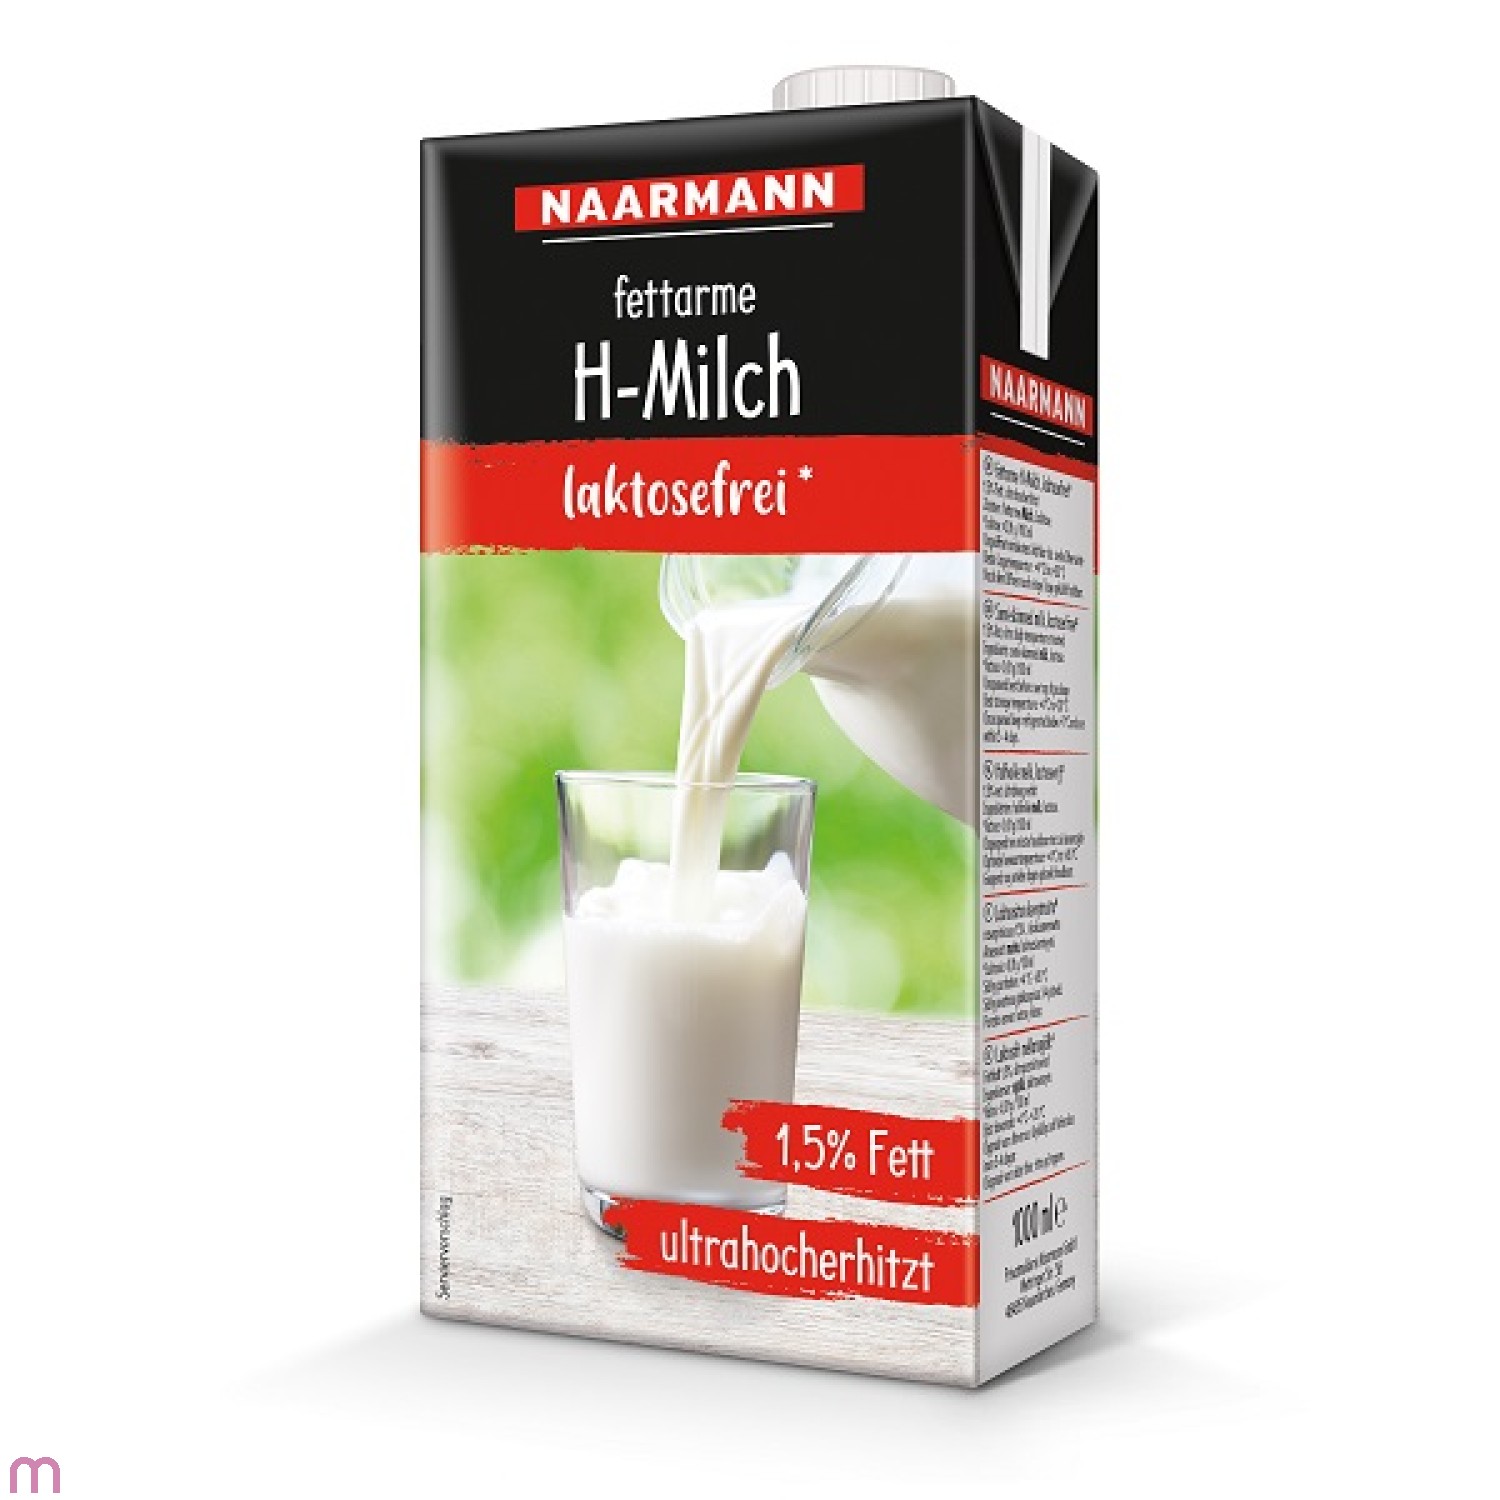 Naarmann H-Milch Laktosefrei 1,5% Fett haltbare Vollmilch mit Drehverschluss 1l